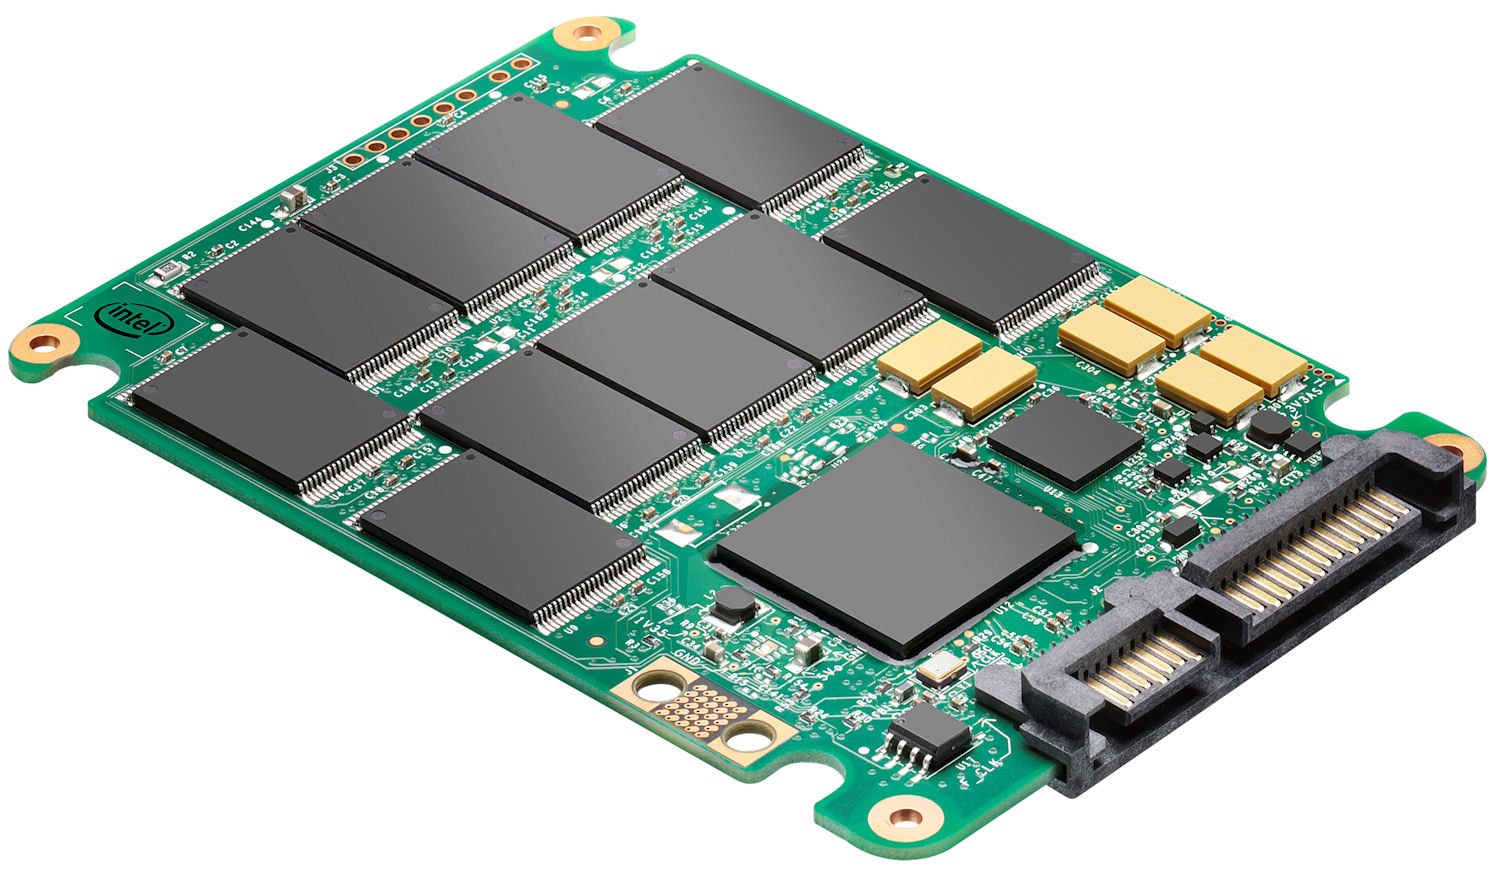 SSD (Solid State Drive) คือ อุปกรณ์จัดเก็บข้อมูลแบบ Solid-State ที่ใช้วงจรรวม ประกอบเป็นหน่วยความจำในการเก็บข้อมูลแบบต่อเนื่อง บางครั้งเรียกว่าอุปกรณ์โซลิดสเตตหรือดิสก์โซลิดสเตต แม้ว่า SSD จะไม่มีดิสก์เป็นฟิสิคัล
SSD สามารถใช้อินเทอร์เฟซฮาร์ดดิสก์ไดรฟ์ (HDD)แบบดั้งเดิม และฟอร์มแฟคเตอร์หรือฟอร์มและอินเทอร์เฟซรูปแบบใหม่ ที่พัฒนาขึ้นเพื่อตอบสนองข้อได้เปรียบเฉพาะของเทคโนโลยีหน่วยความจำแฟลชที่ใช้ใน SSD อินเทอร์เฟซแบบดั้งเดิม (เช่นSATAและSAS ) และปัจจัยรูปแบบ HDD มาตรฐานช่วยให้ SSD ดังกล่าวสามารถใช้เป็นแบบแทนที่ สำหรับ HDD ในคอมพิวเตอร์และอุปกรณ์อื่น ๆ ปัจจัยรูปแบบใหม่เช่น mSATA , M.2 , U.2 และ Ruler SSD และอินเตอร์เฟสความเร็วสูงกว่าเช่น NVMe ผ่าน PCI Express สามารถเพิ่มประสิทธิภาพการทำงานของ HDD 
SSD ไม่มีส่วนประกอบเชิงกลที่เคลื่อนไหว สิ่งนี้แตกต่างจากไดรฟ์ระบบเครื่องกลไฟฟ้าทั่วไปเช่นฮาร์ดดิสก์ไดรฟ์ (HDD) หรือฟลอปปีดิสก์ซึ่งมีดิสก์หมุนและหัวอ่าน / เขียนแบบเคลื่อนย้ายได้ เมื่อเทียบกับไดรฟ์ไฟฟ้า SSDs มักจะทนต่อการช็อกทางกายภาพทำงานอย่างเงียบ ๆ ได้เร็วขึ้นเวลาในการเข้าถึงและลดความล่าช้า ในขณะที่ราคาของ SSD ลดลงอย่างต่อเนื่องเมื่อเวลาผ่านไป SSDs (ตั้งแต่ปีพ. ศ. 2561 ) ยังคงมีราคาแพงกว่าต่อหน่วยเก็บข้อมูลมากกว่า HDD และคาดว่าจะยังคงอยู่ในทศวรรษหน้า